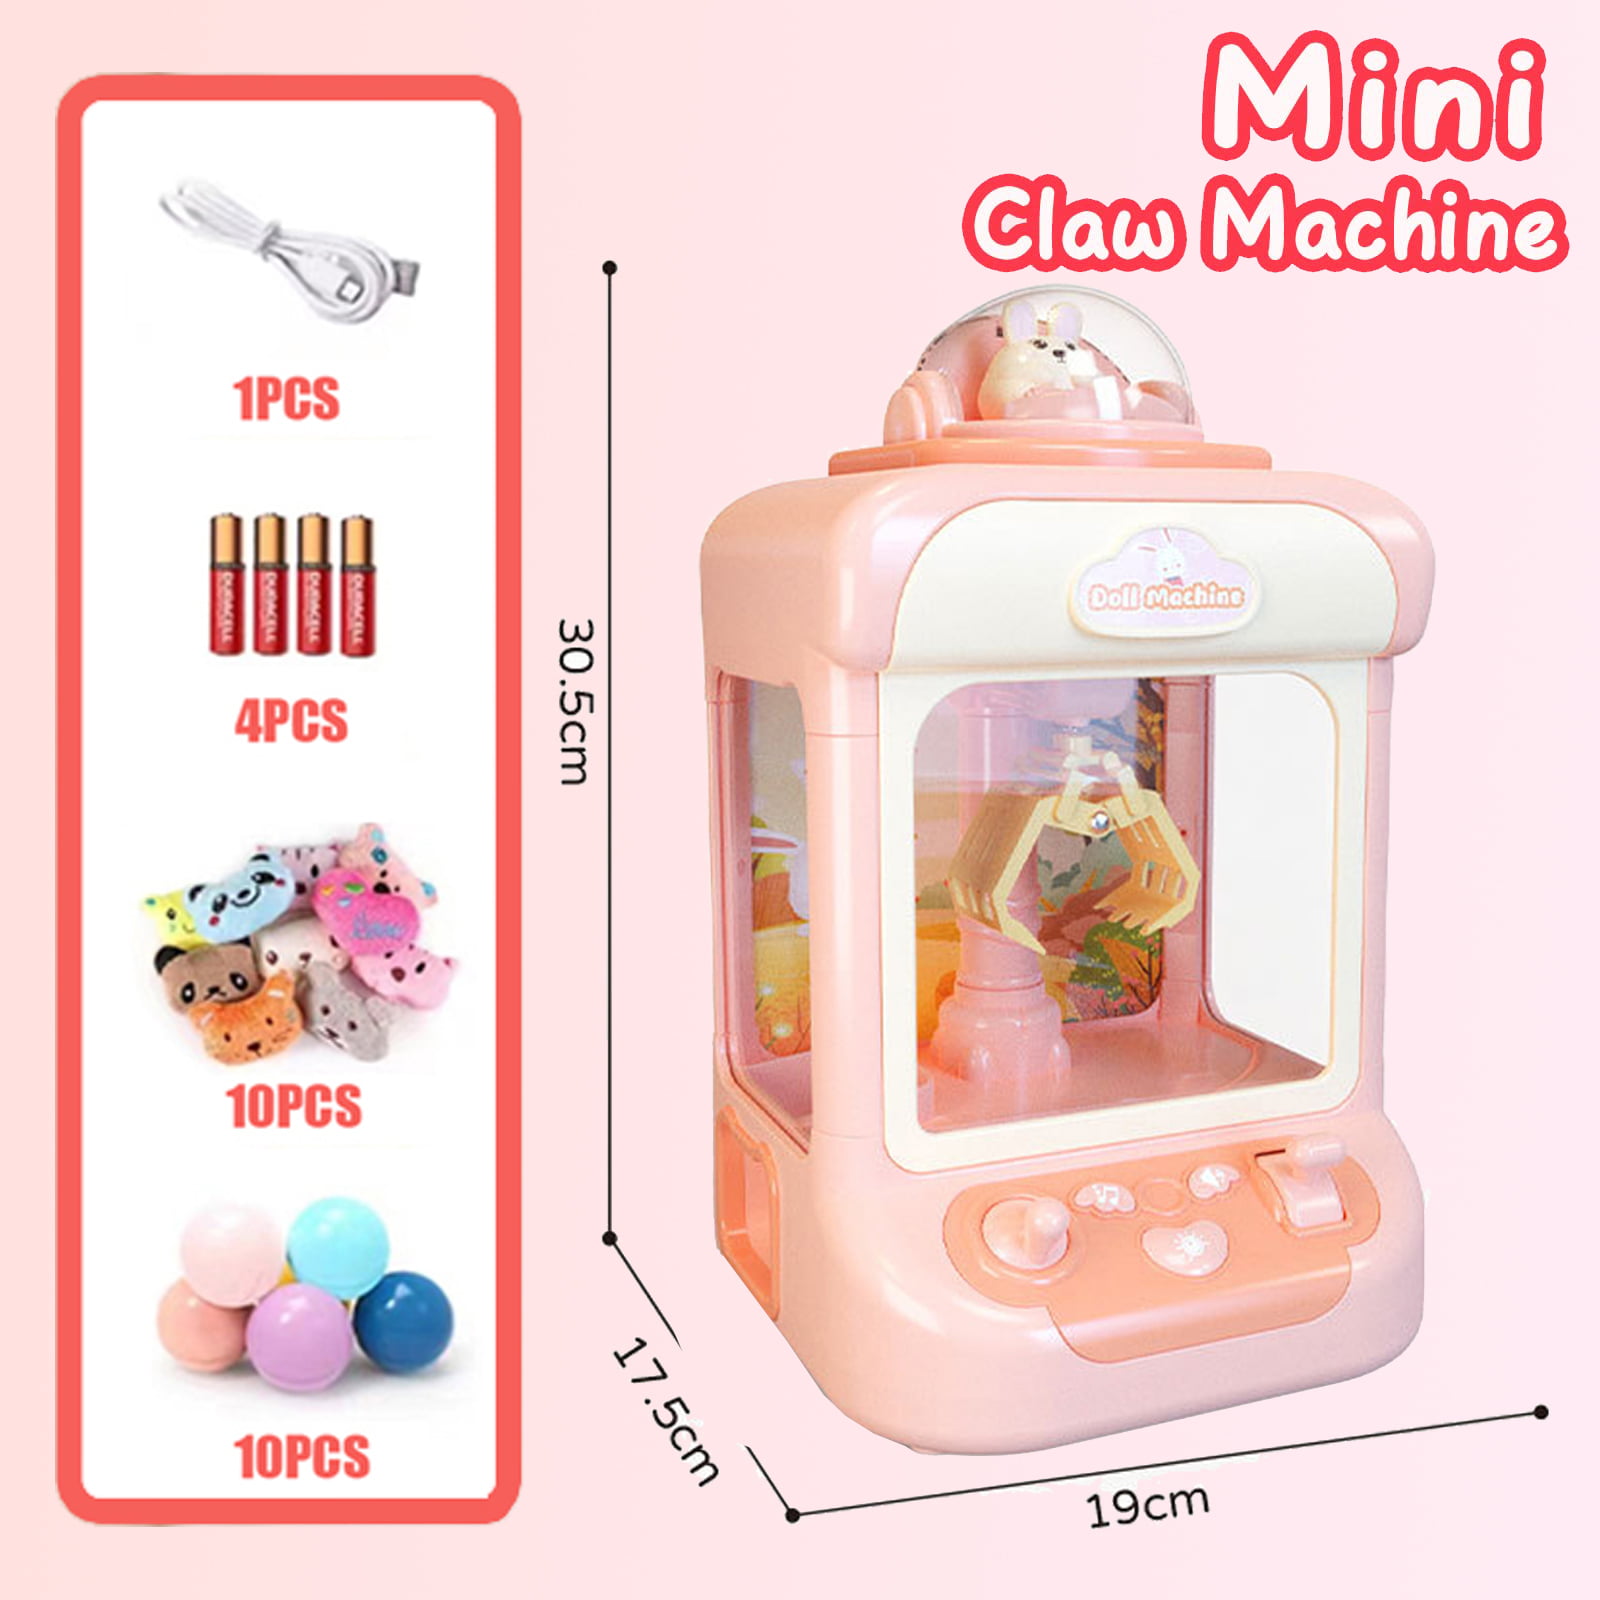 Mini Claw Machine (Pink) – The Fuzzy Friday